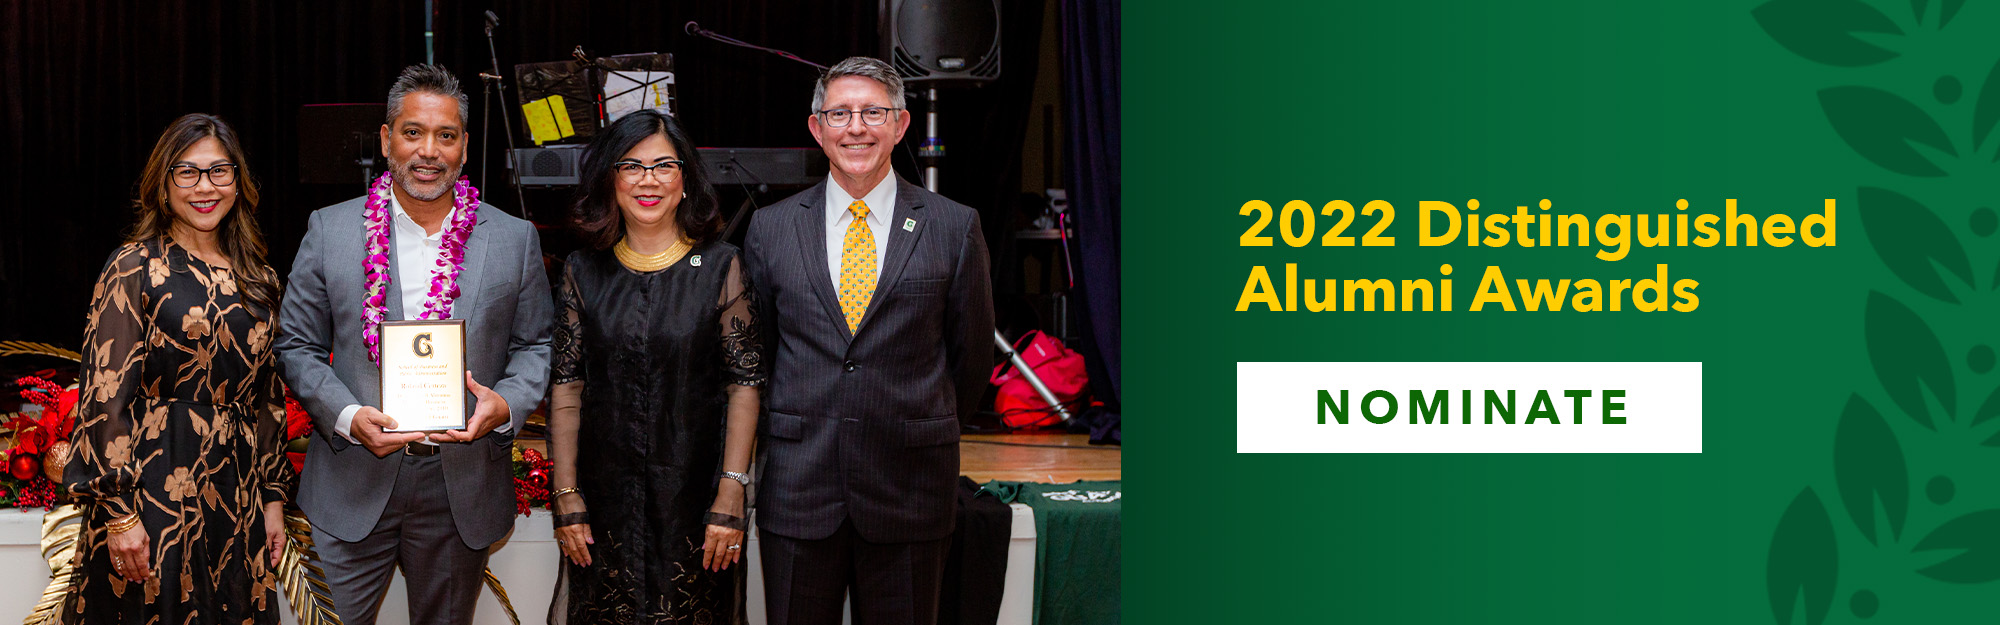 2022 Distinguished Alumni Awards 2022